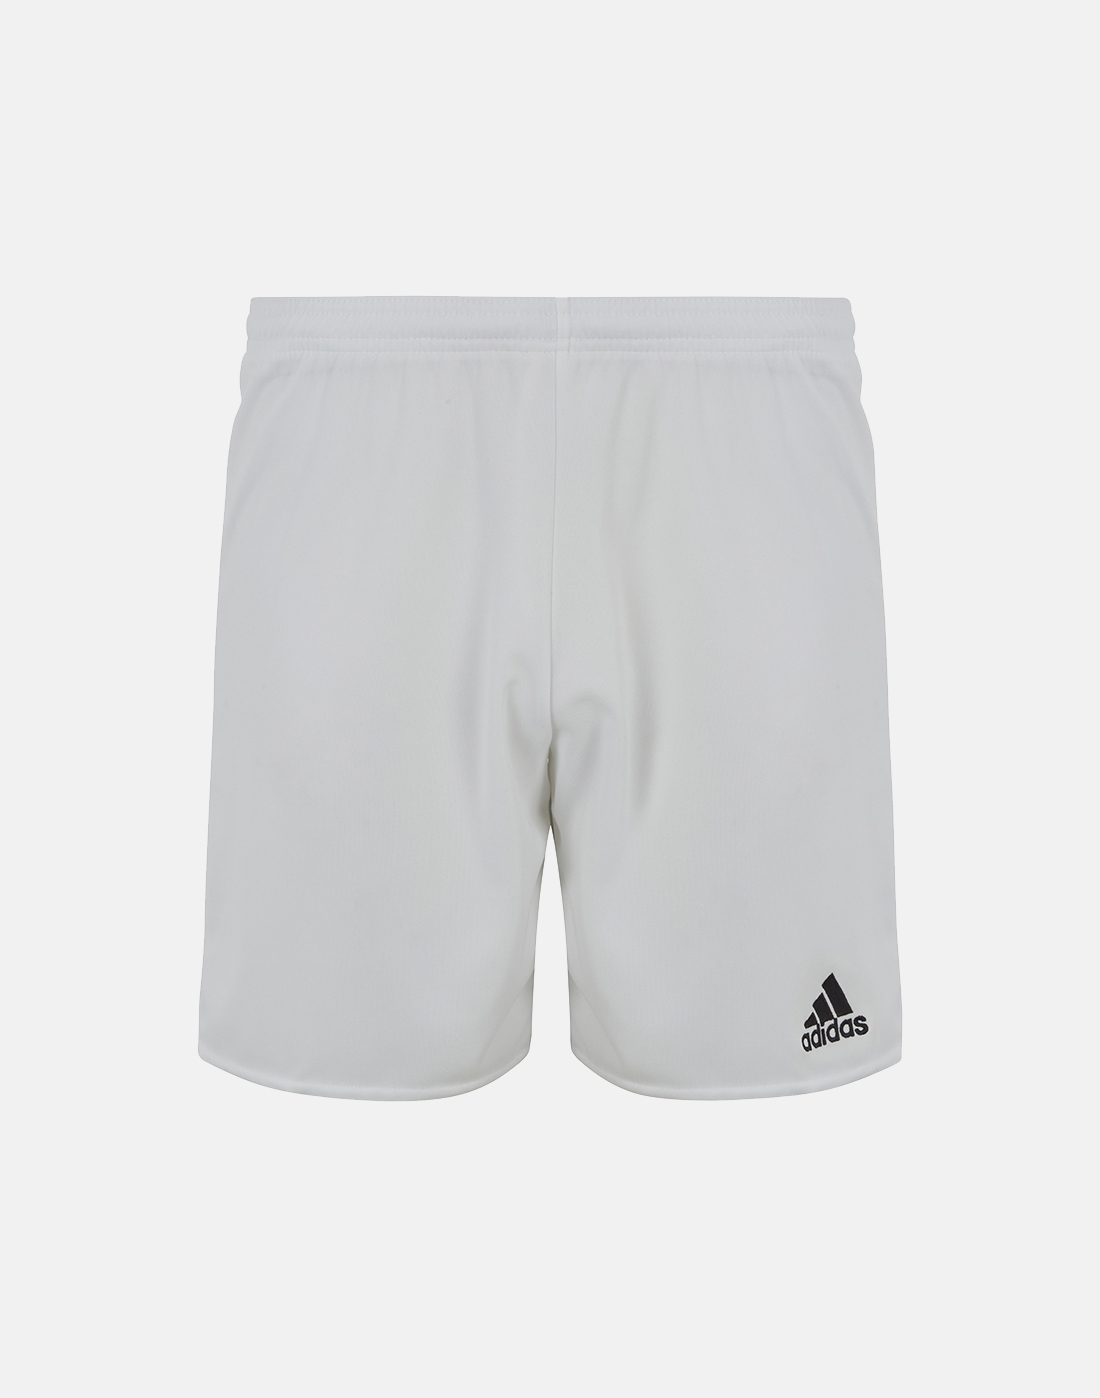 cheap adidas football shorts